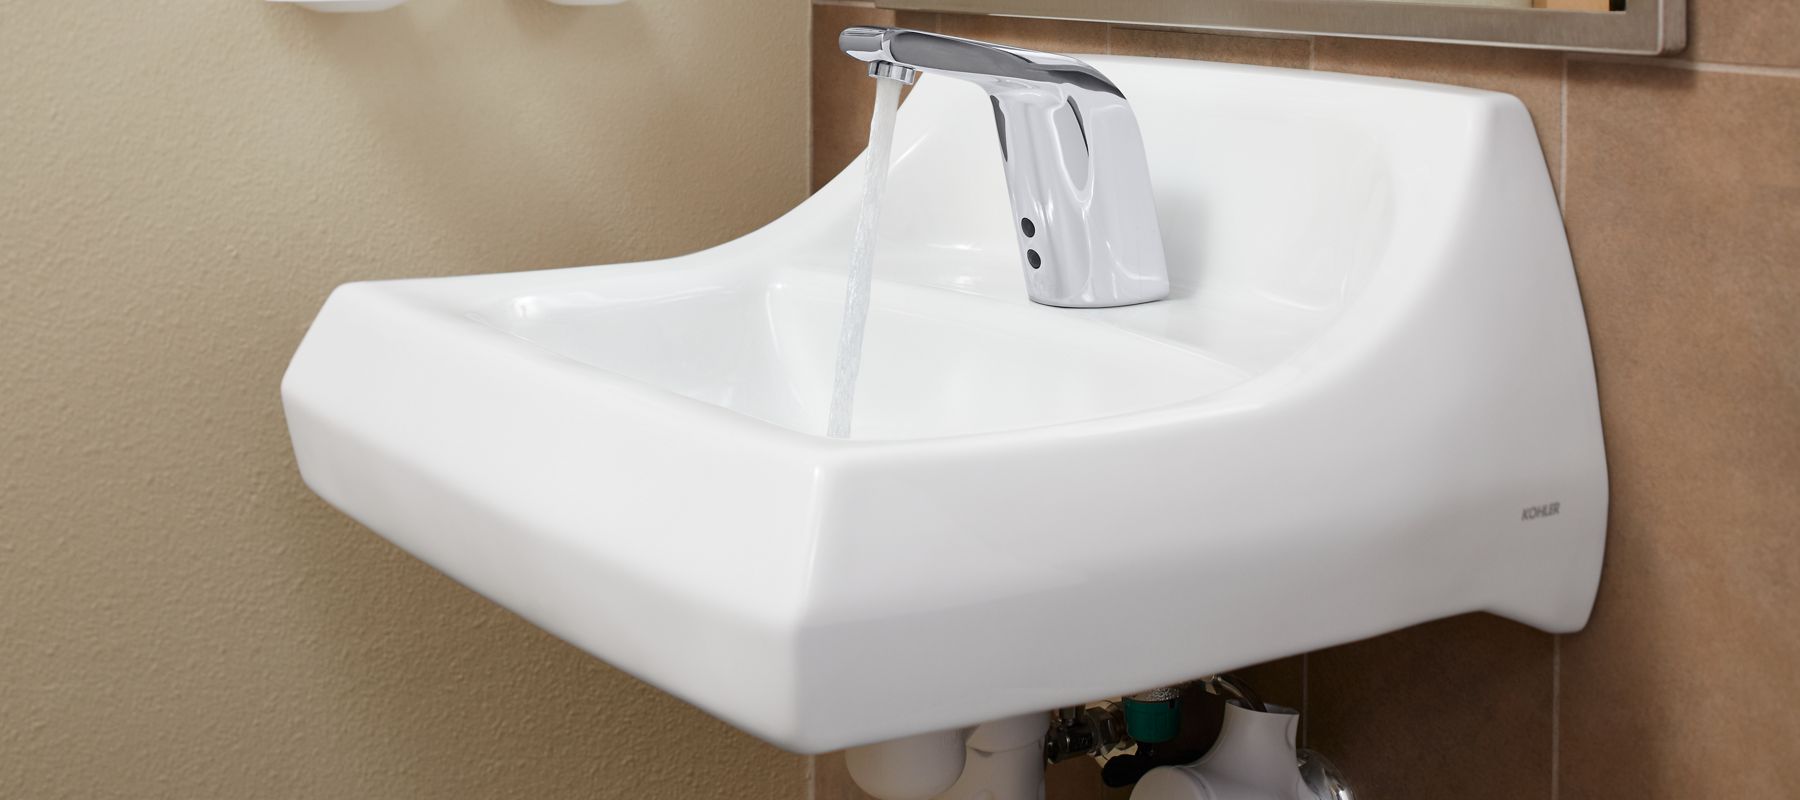 Sinks Commercial Bathroom Bathroom KOHLER